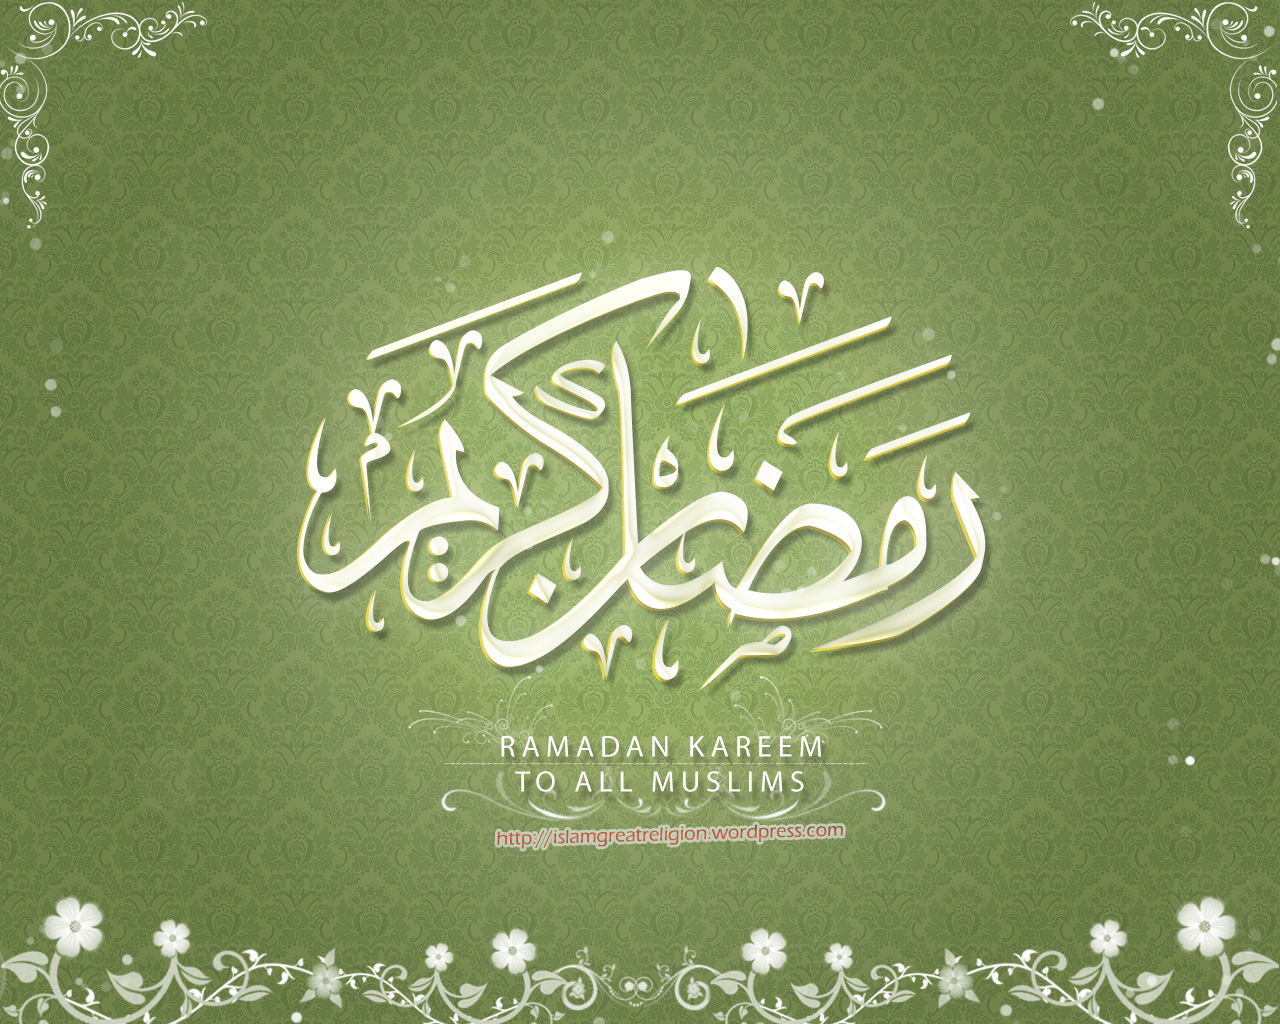  ramadan mubarak wallpapers download hd wallpapers ramadan mubarak